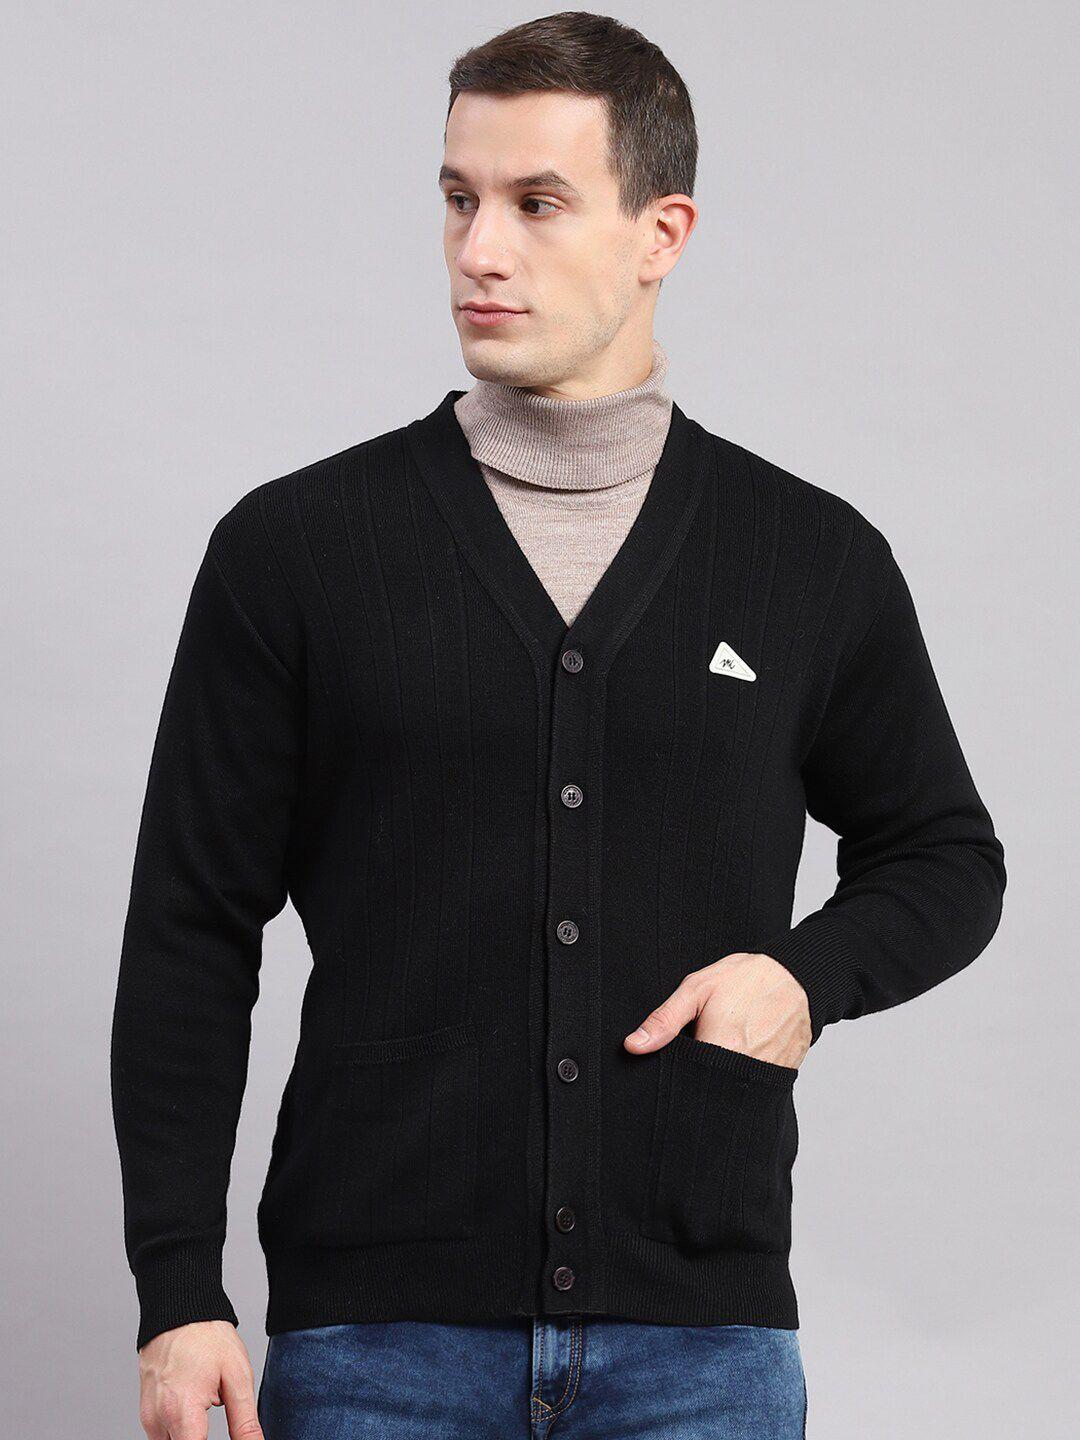 monte carlo solid v-neck woollen cardigan